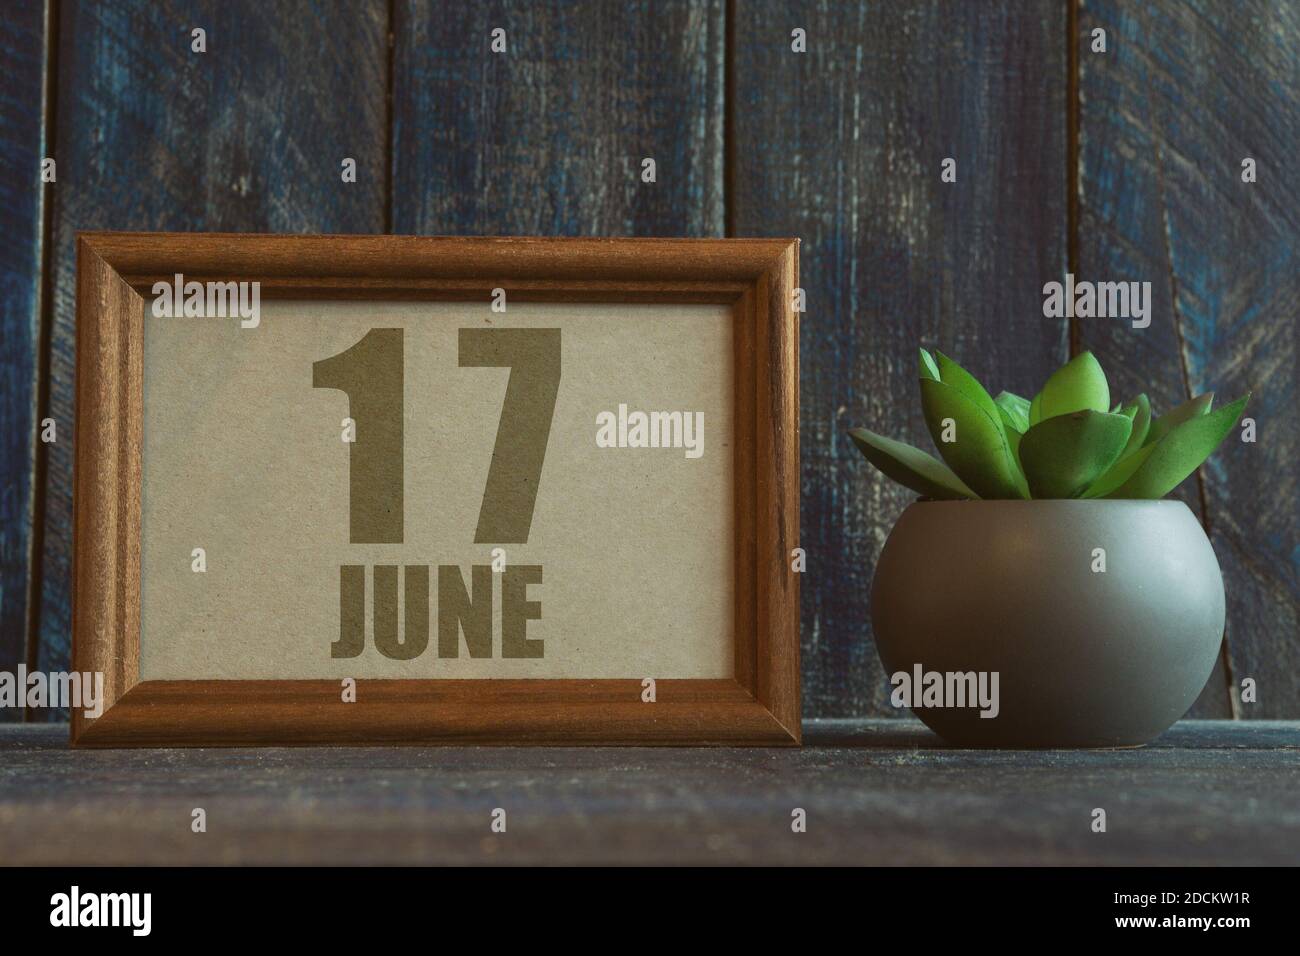 juni. Tag 17 des Monats, Datum im Rahmen neben Sukkulenten auf hölzernen Hintergrund Sommermonat, Tag des Jahres Konzept. Stockfoto